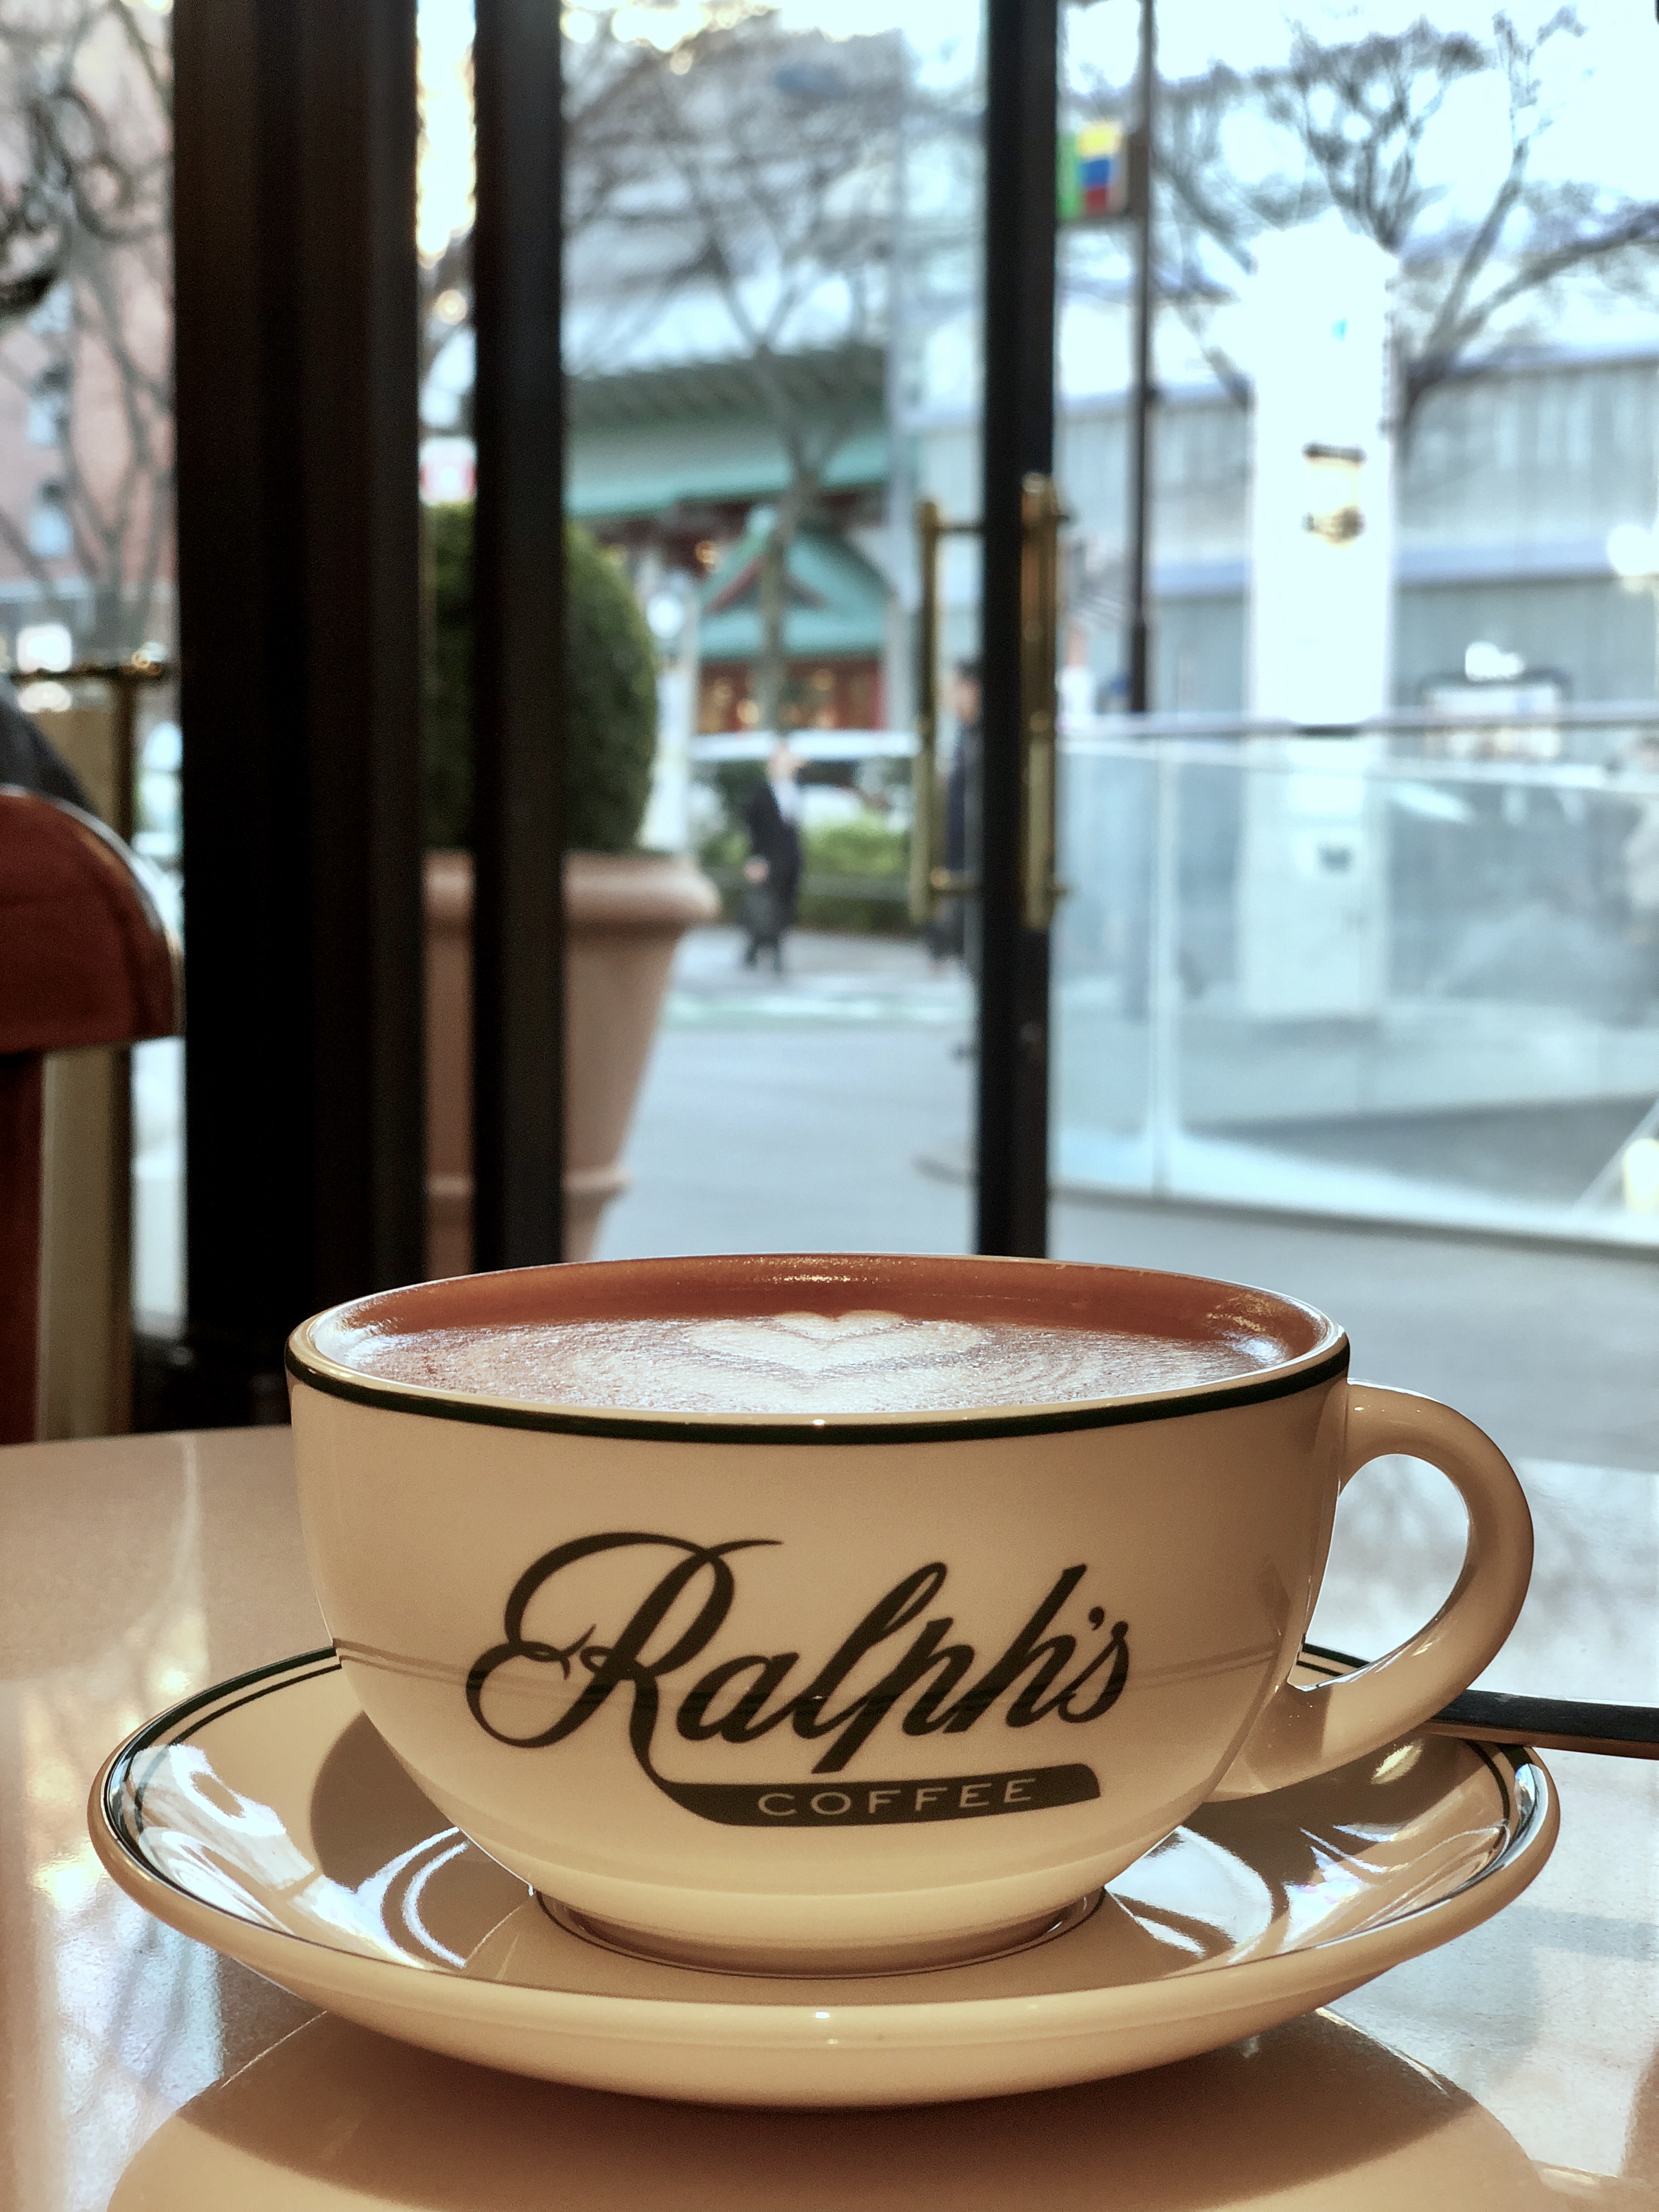 ralph's coffee cup